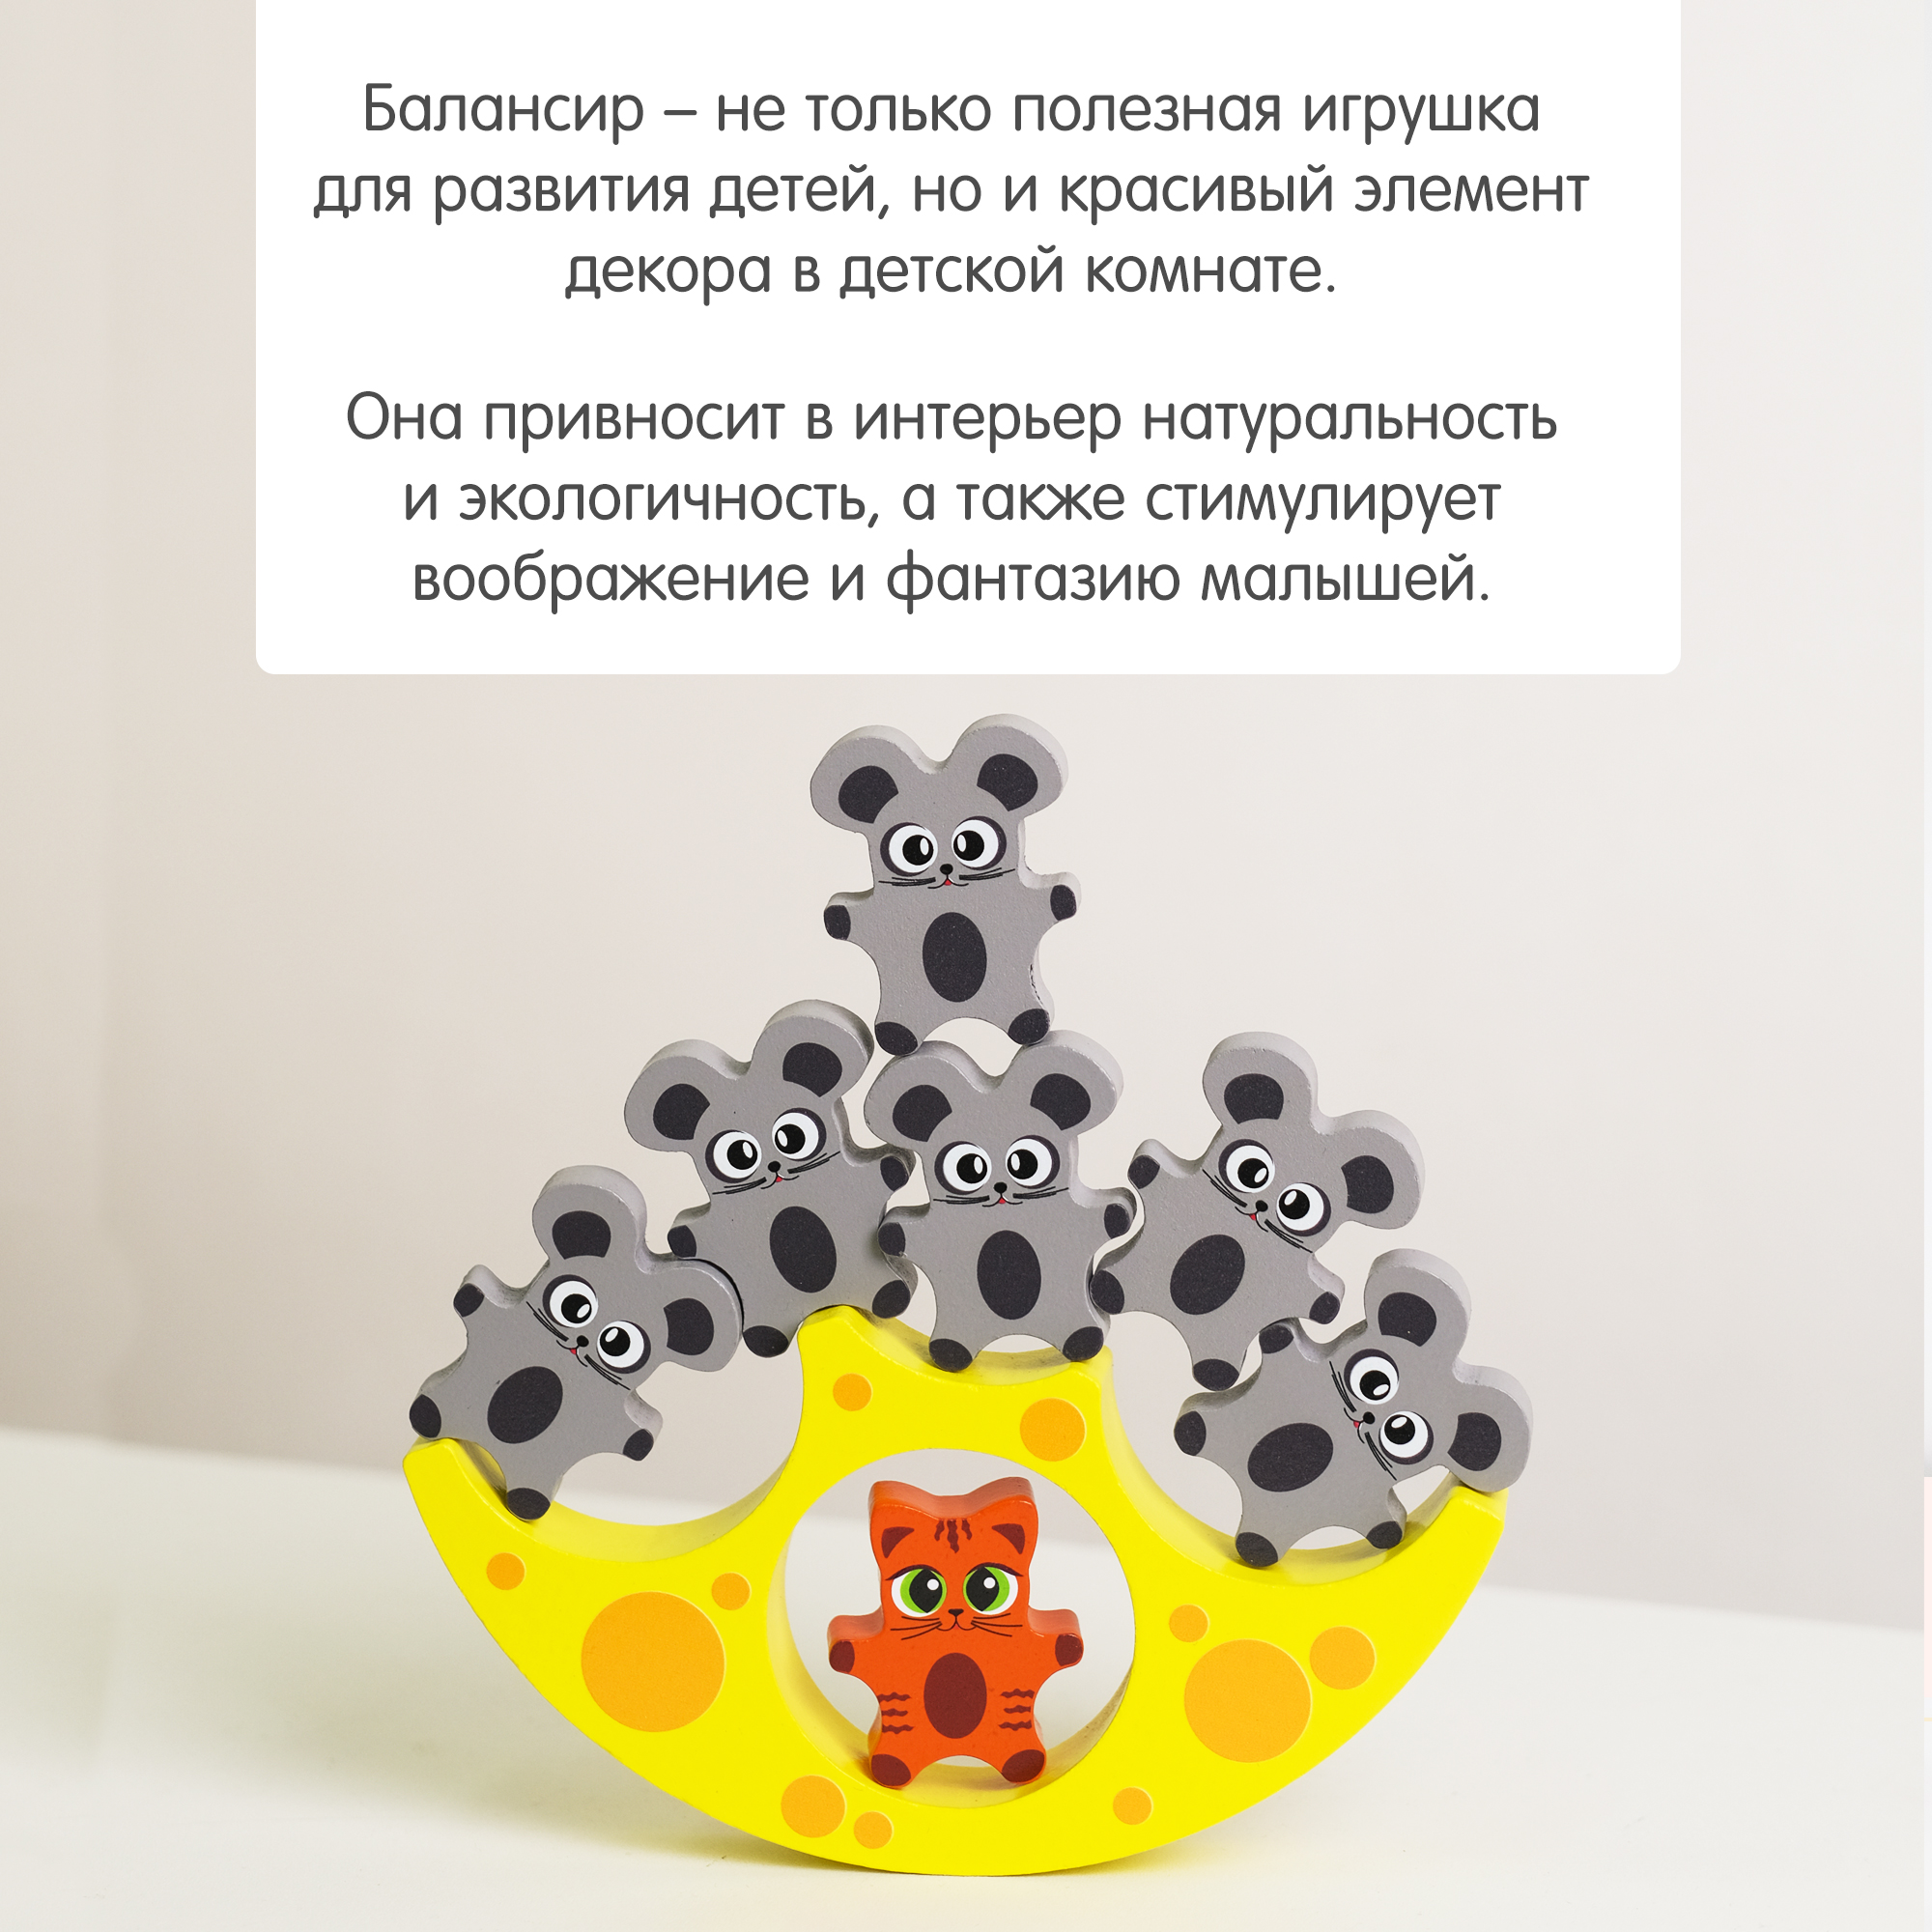 Балансир Кошки-Мышки Алатойс 8 фигурок деревянная развивающая игра - фото 9